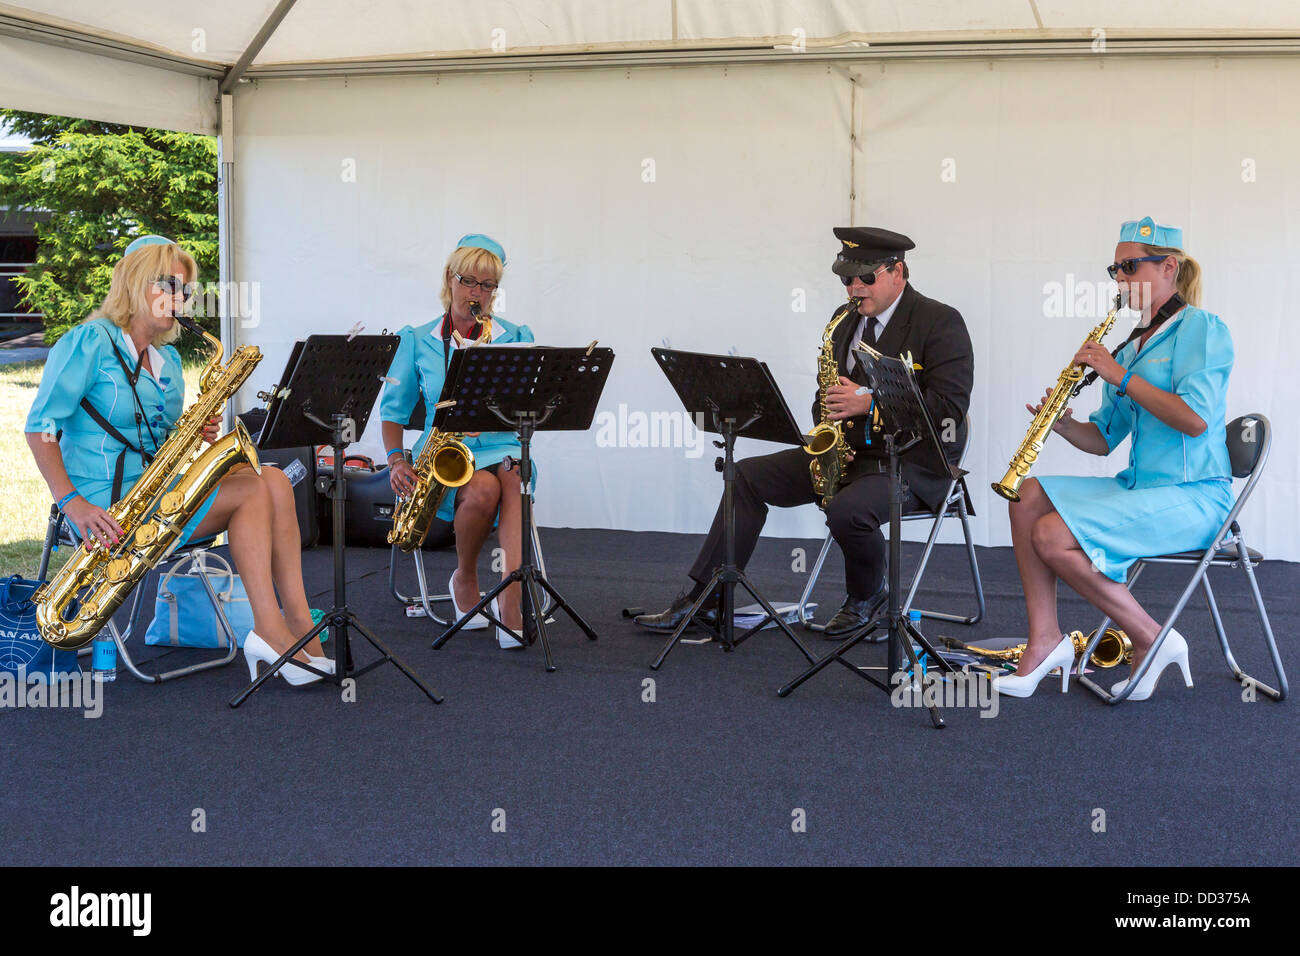 Les membres du quatuor de saxophones de la Pan Am à l'exécution 2013 Goodwood Festival of Speed, Sussex, UK Banque D'Images